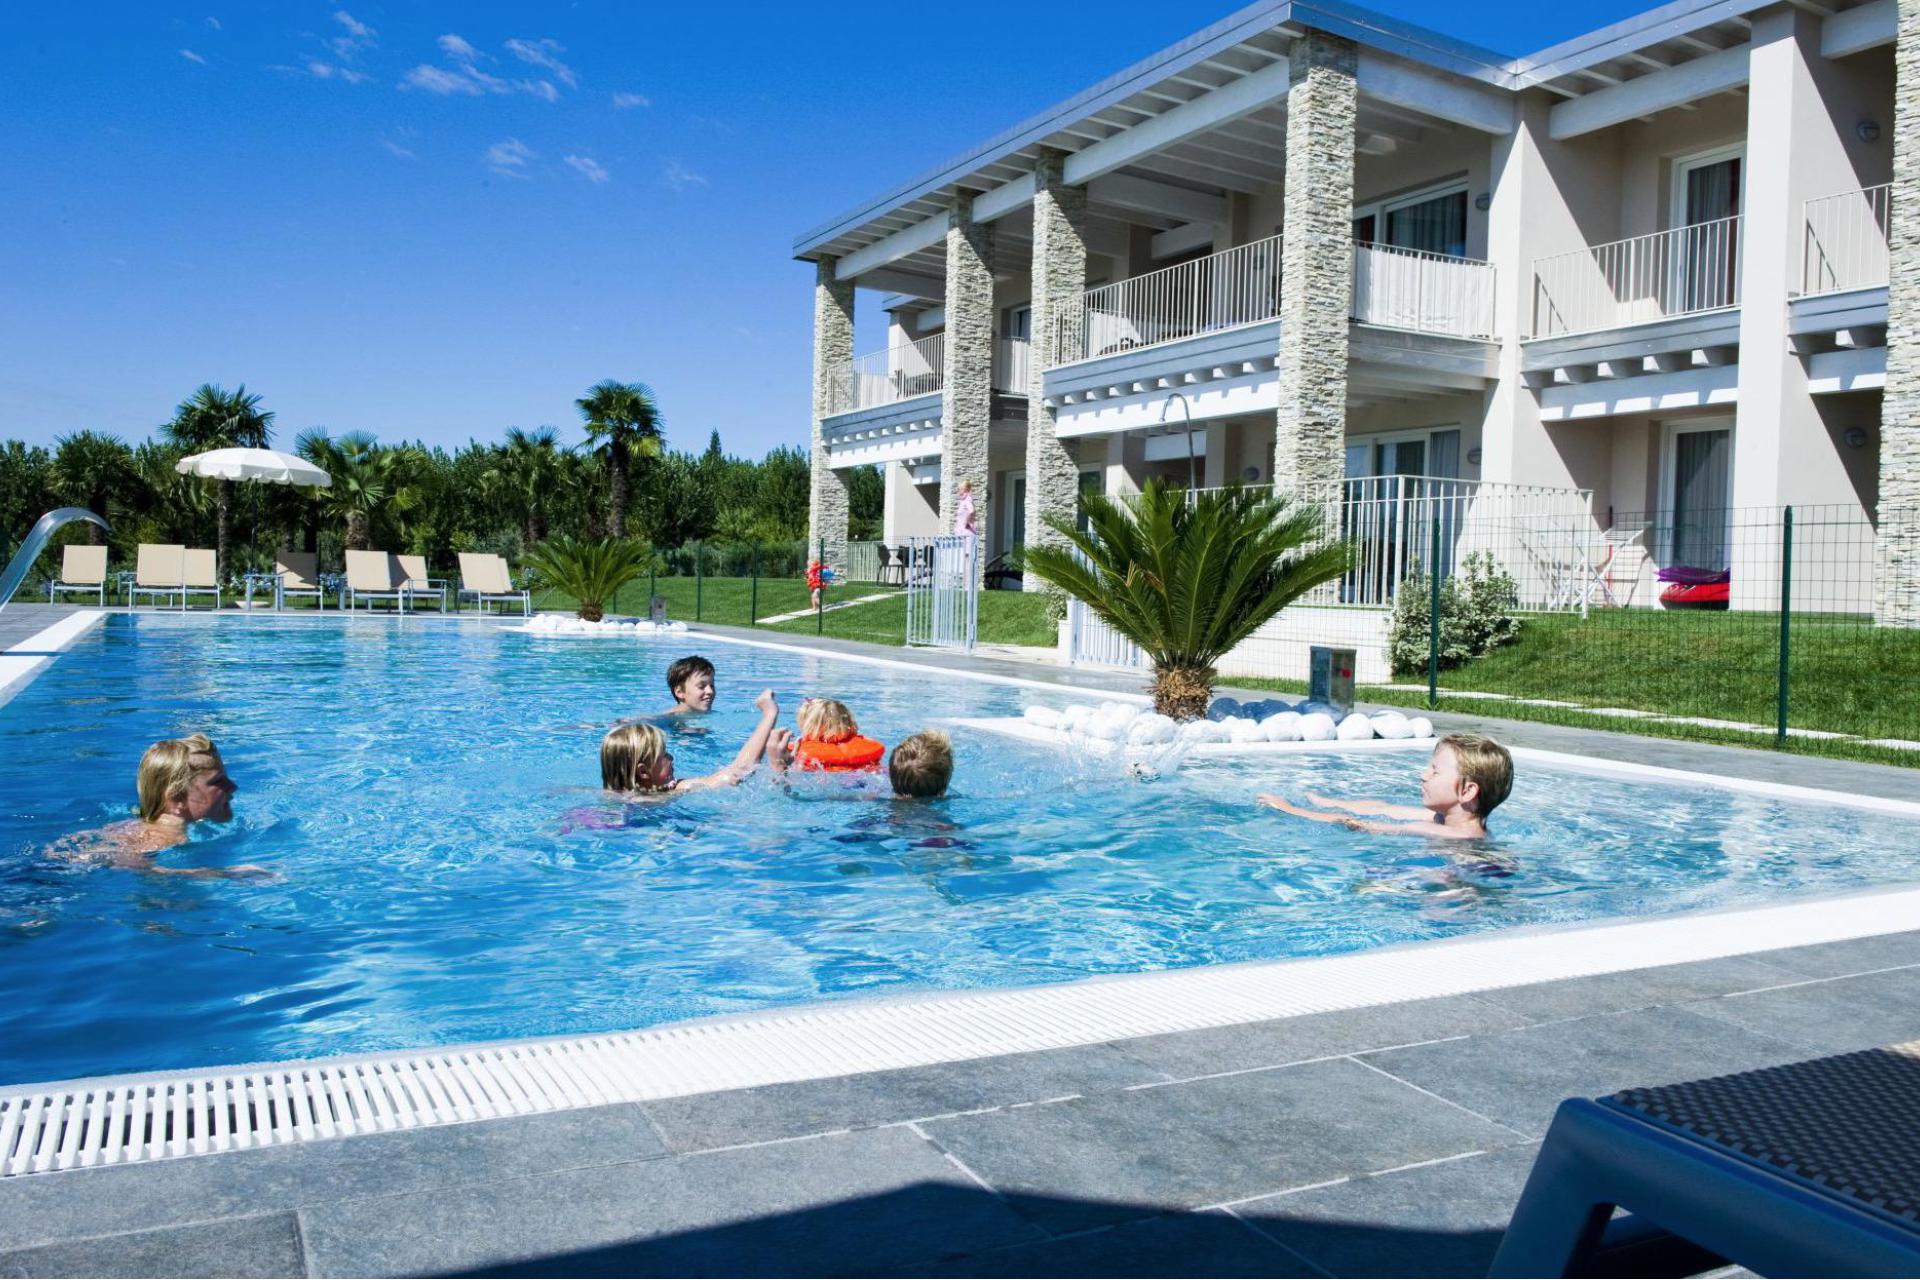 Modern, child-friendly residence within walking distance of Lake Garda